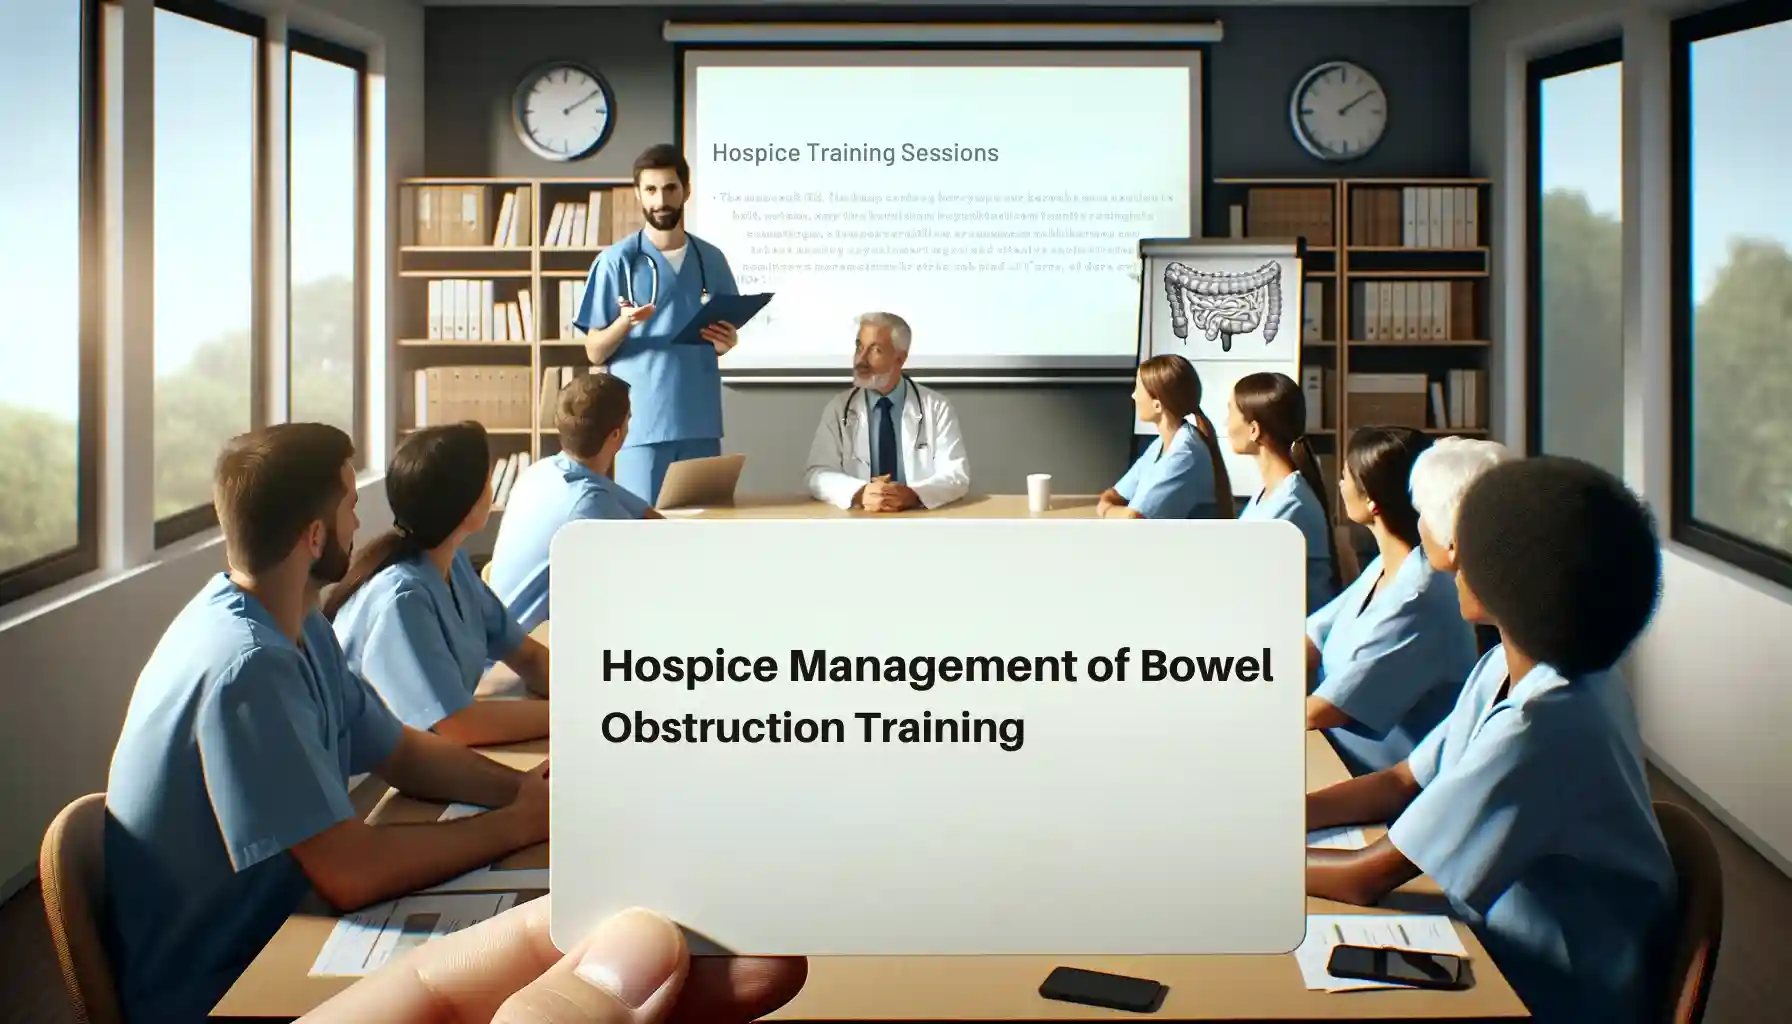 Hospice Management of Bowel Obstruction Training Course Description